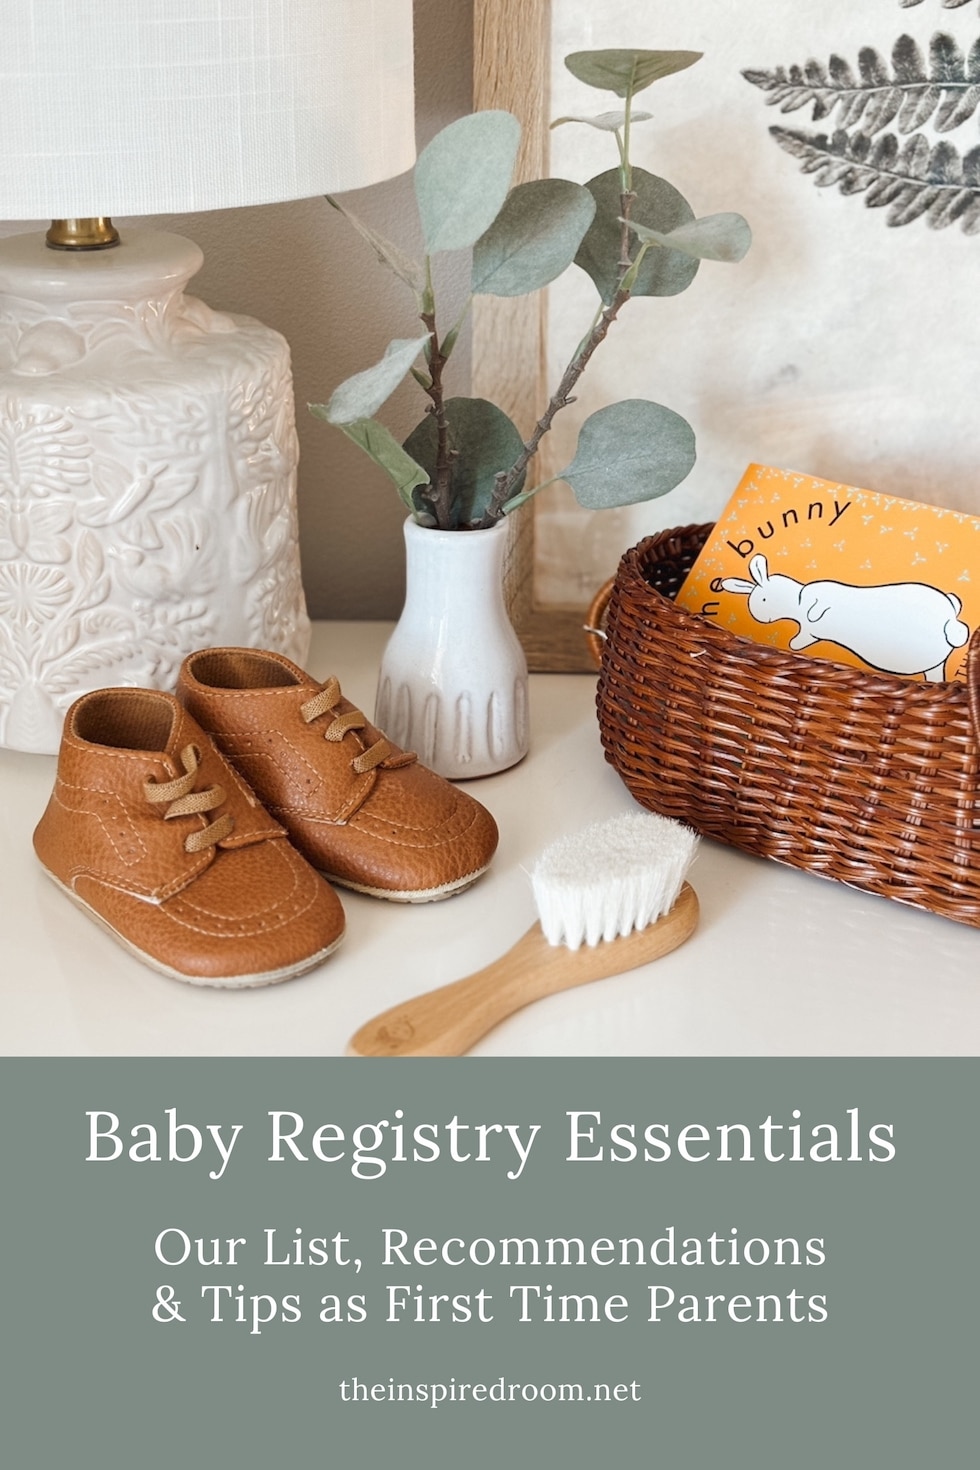 Baby registry essentials